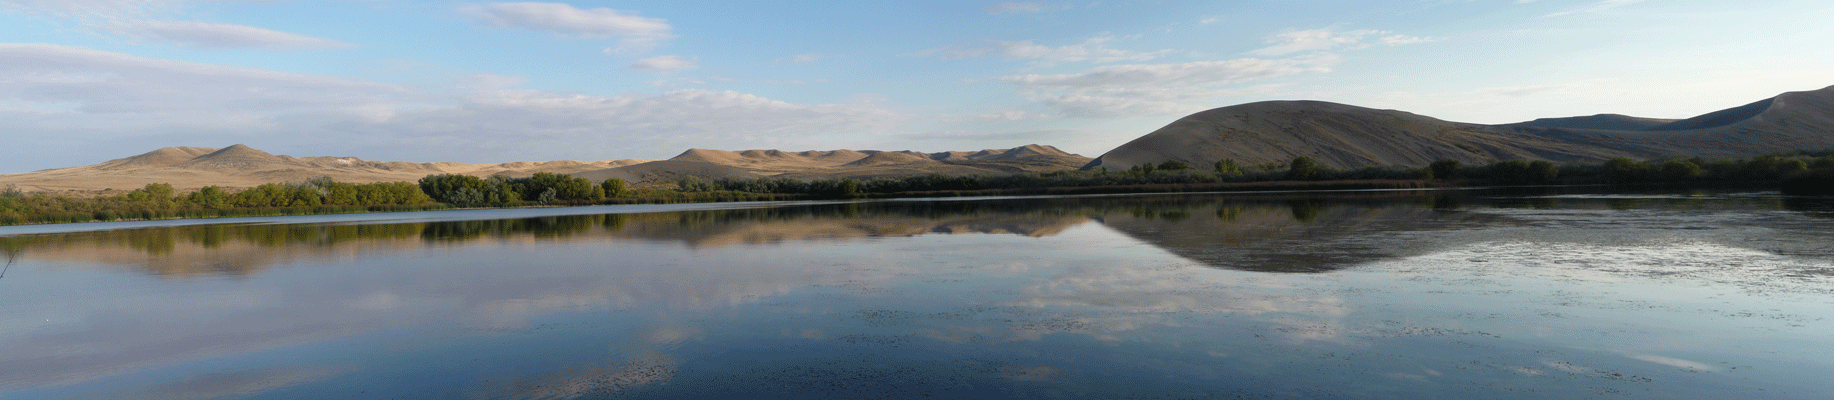 Bruneau Dunes Lake Panorama